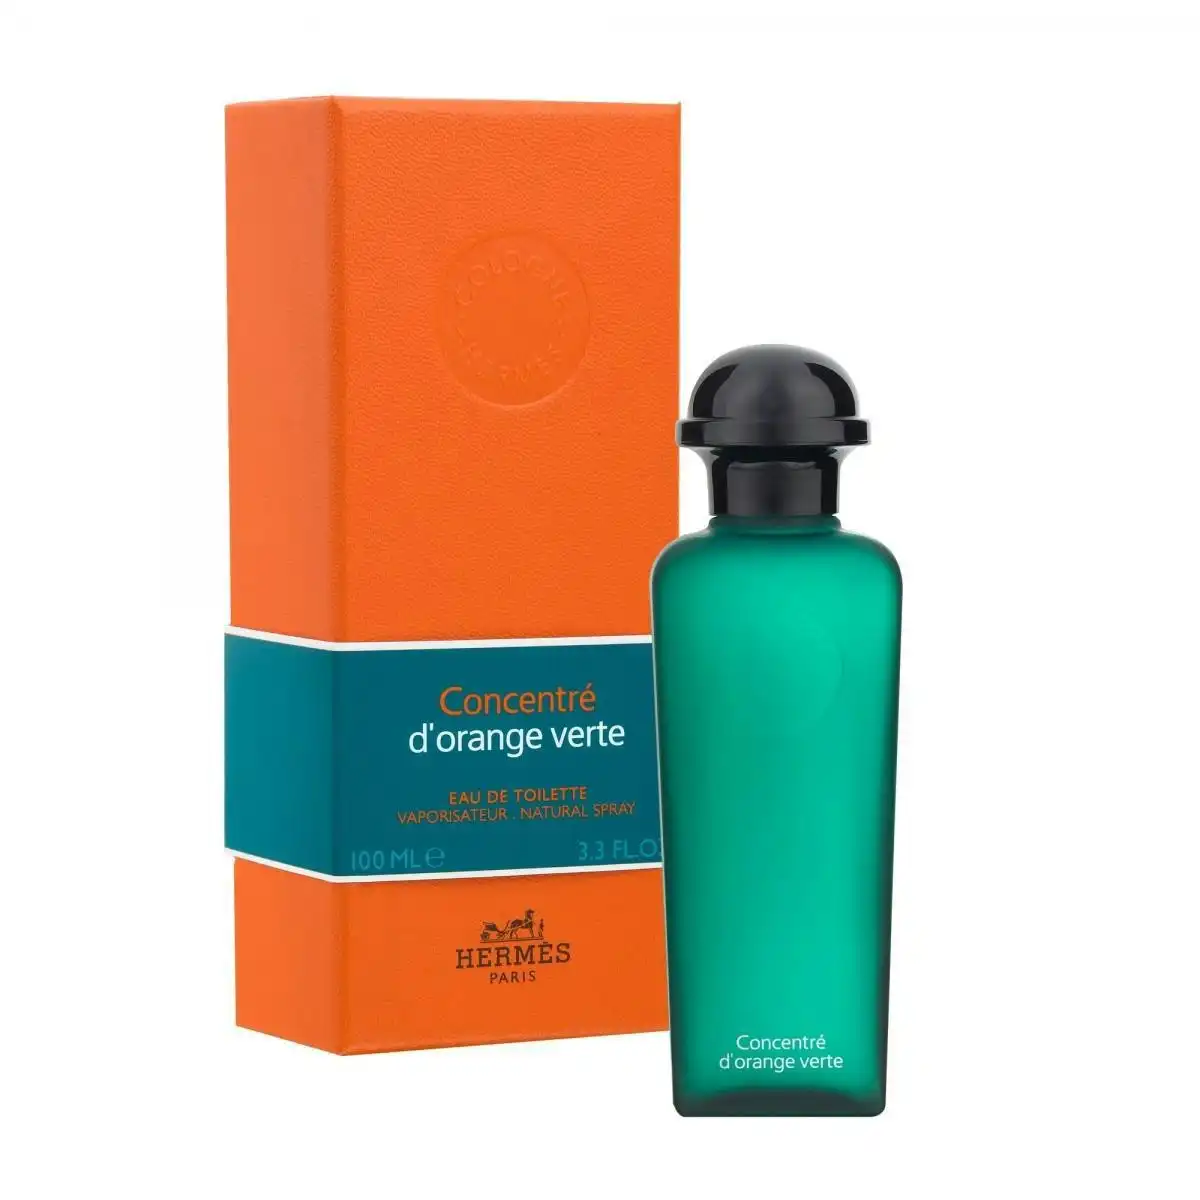 Concentre D'Orange Verte by Hermes